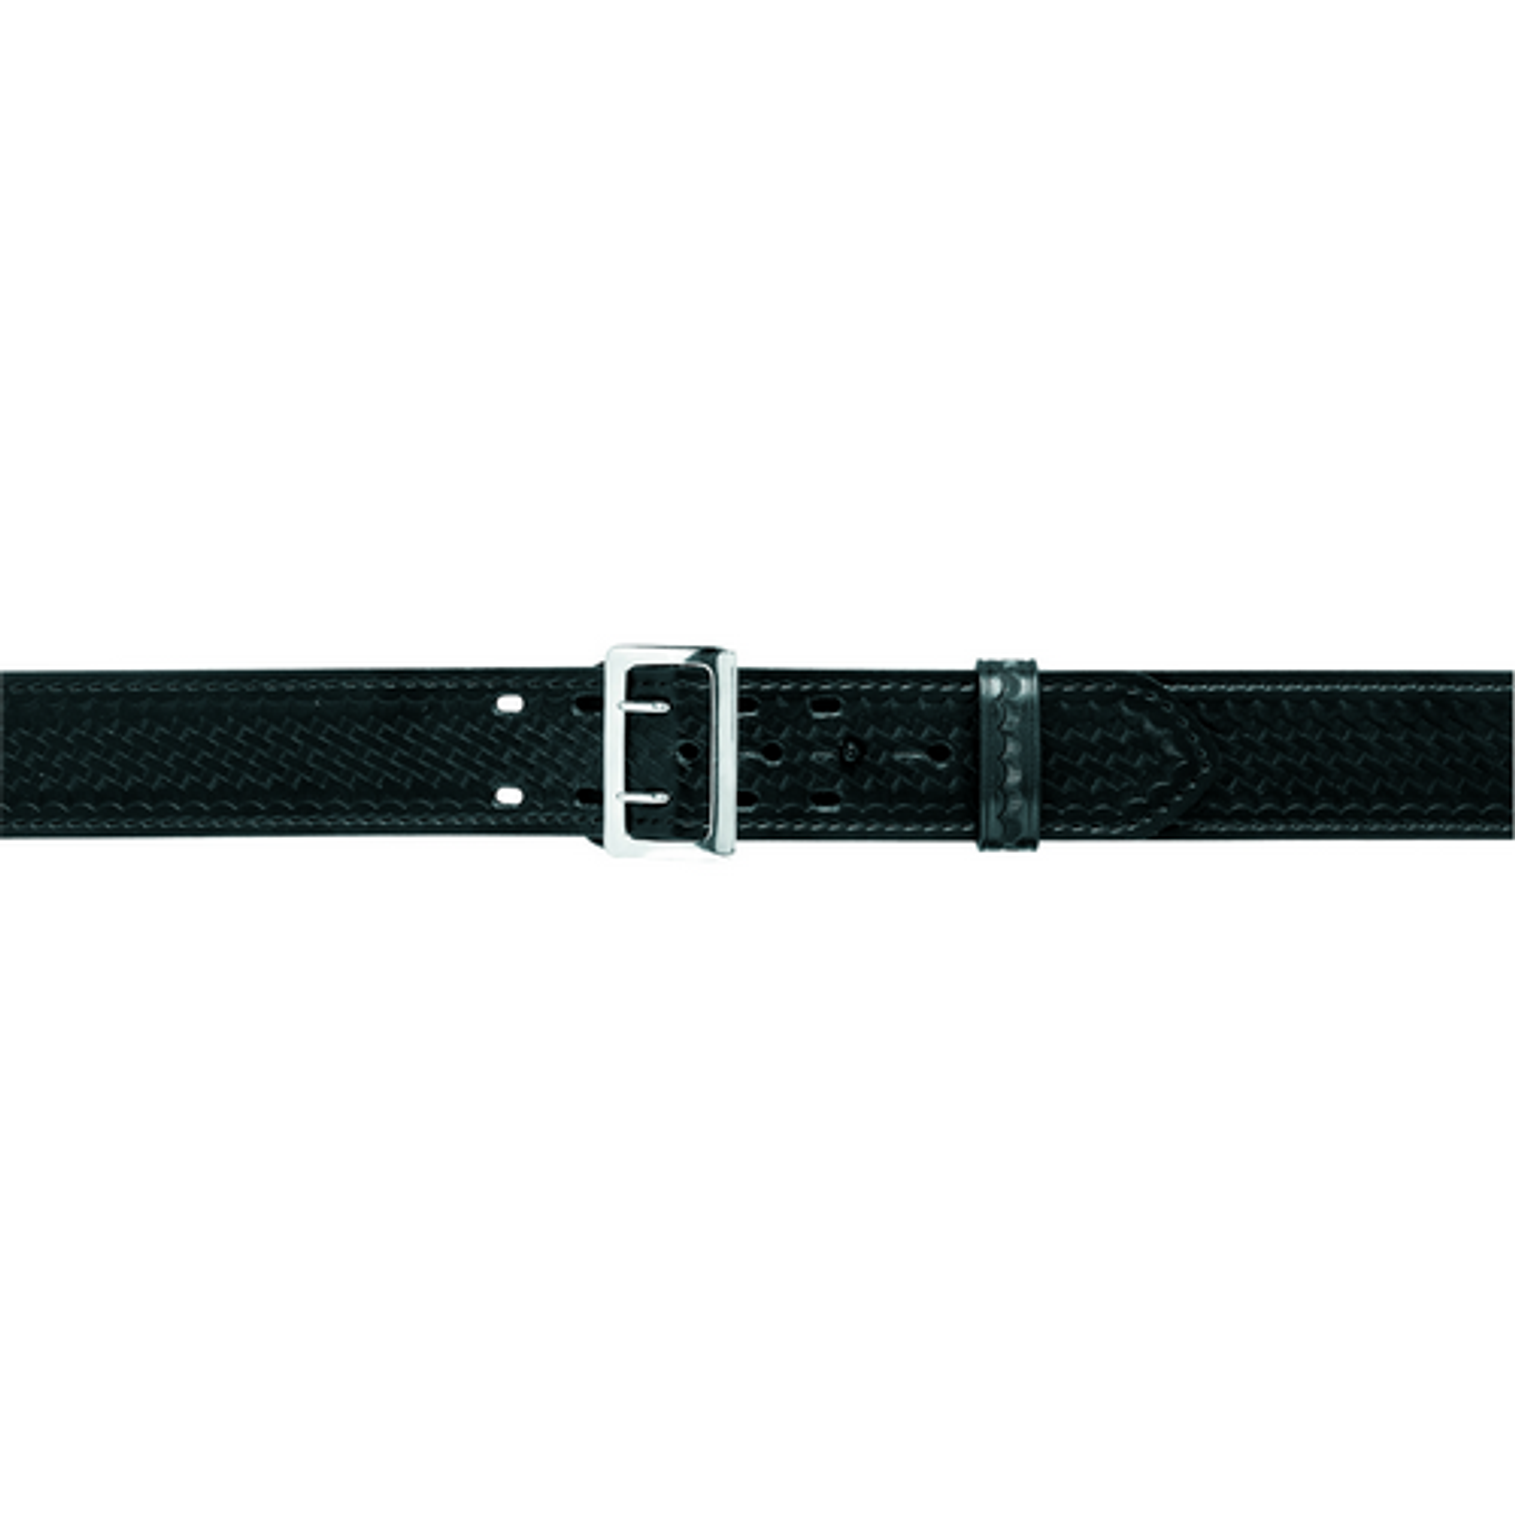 87v - Sam Browne Duty Belt, Hook Lined, 2.25 (58mm)